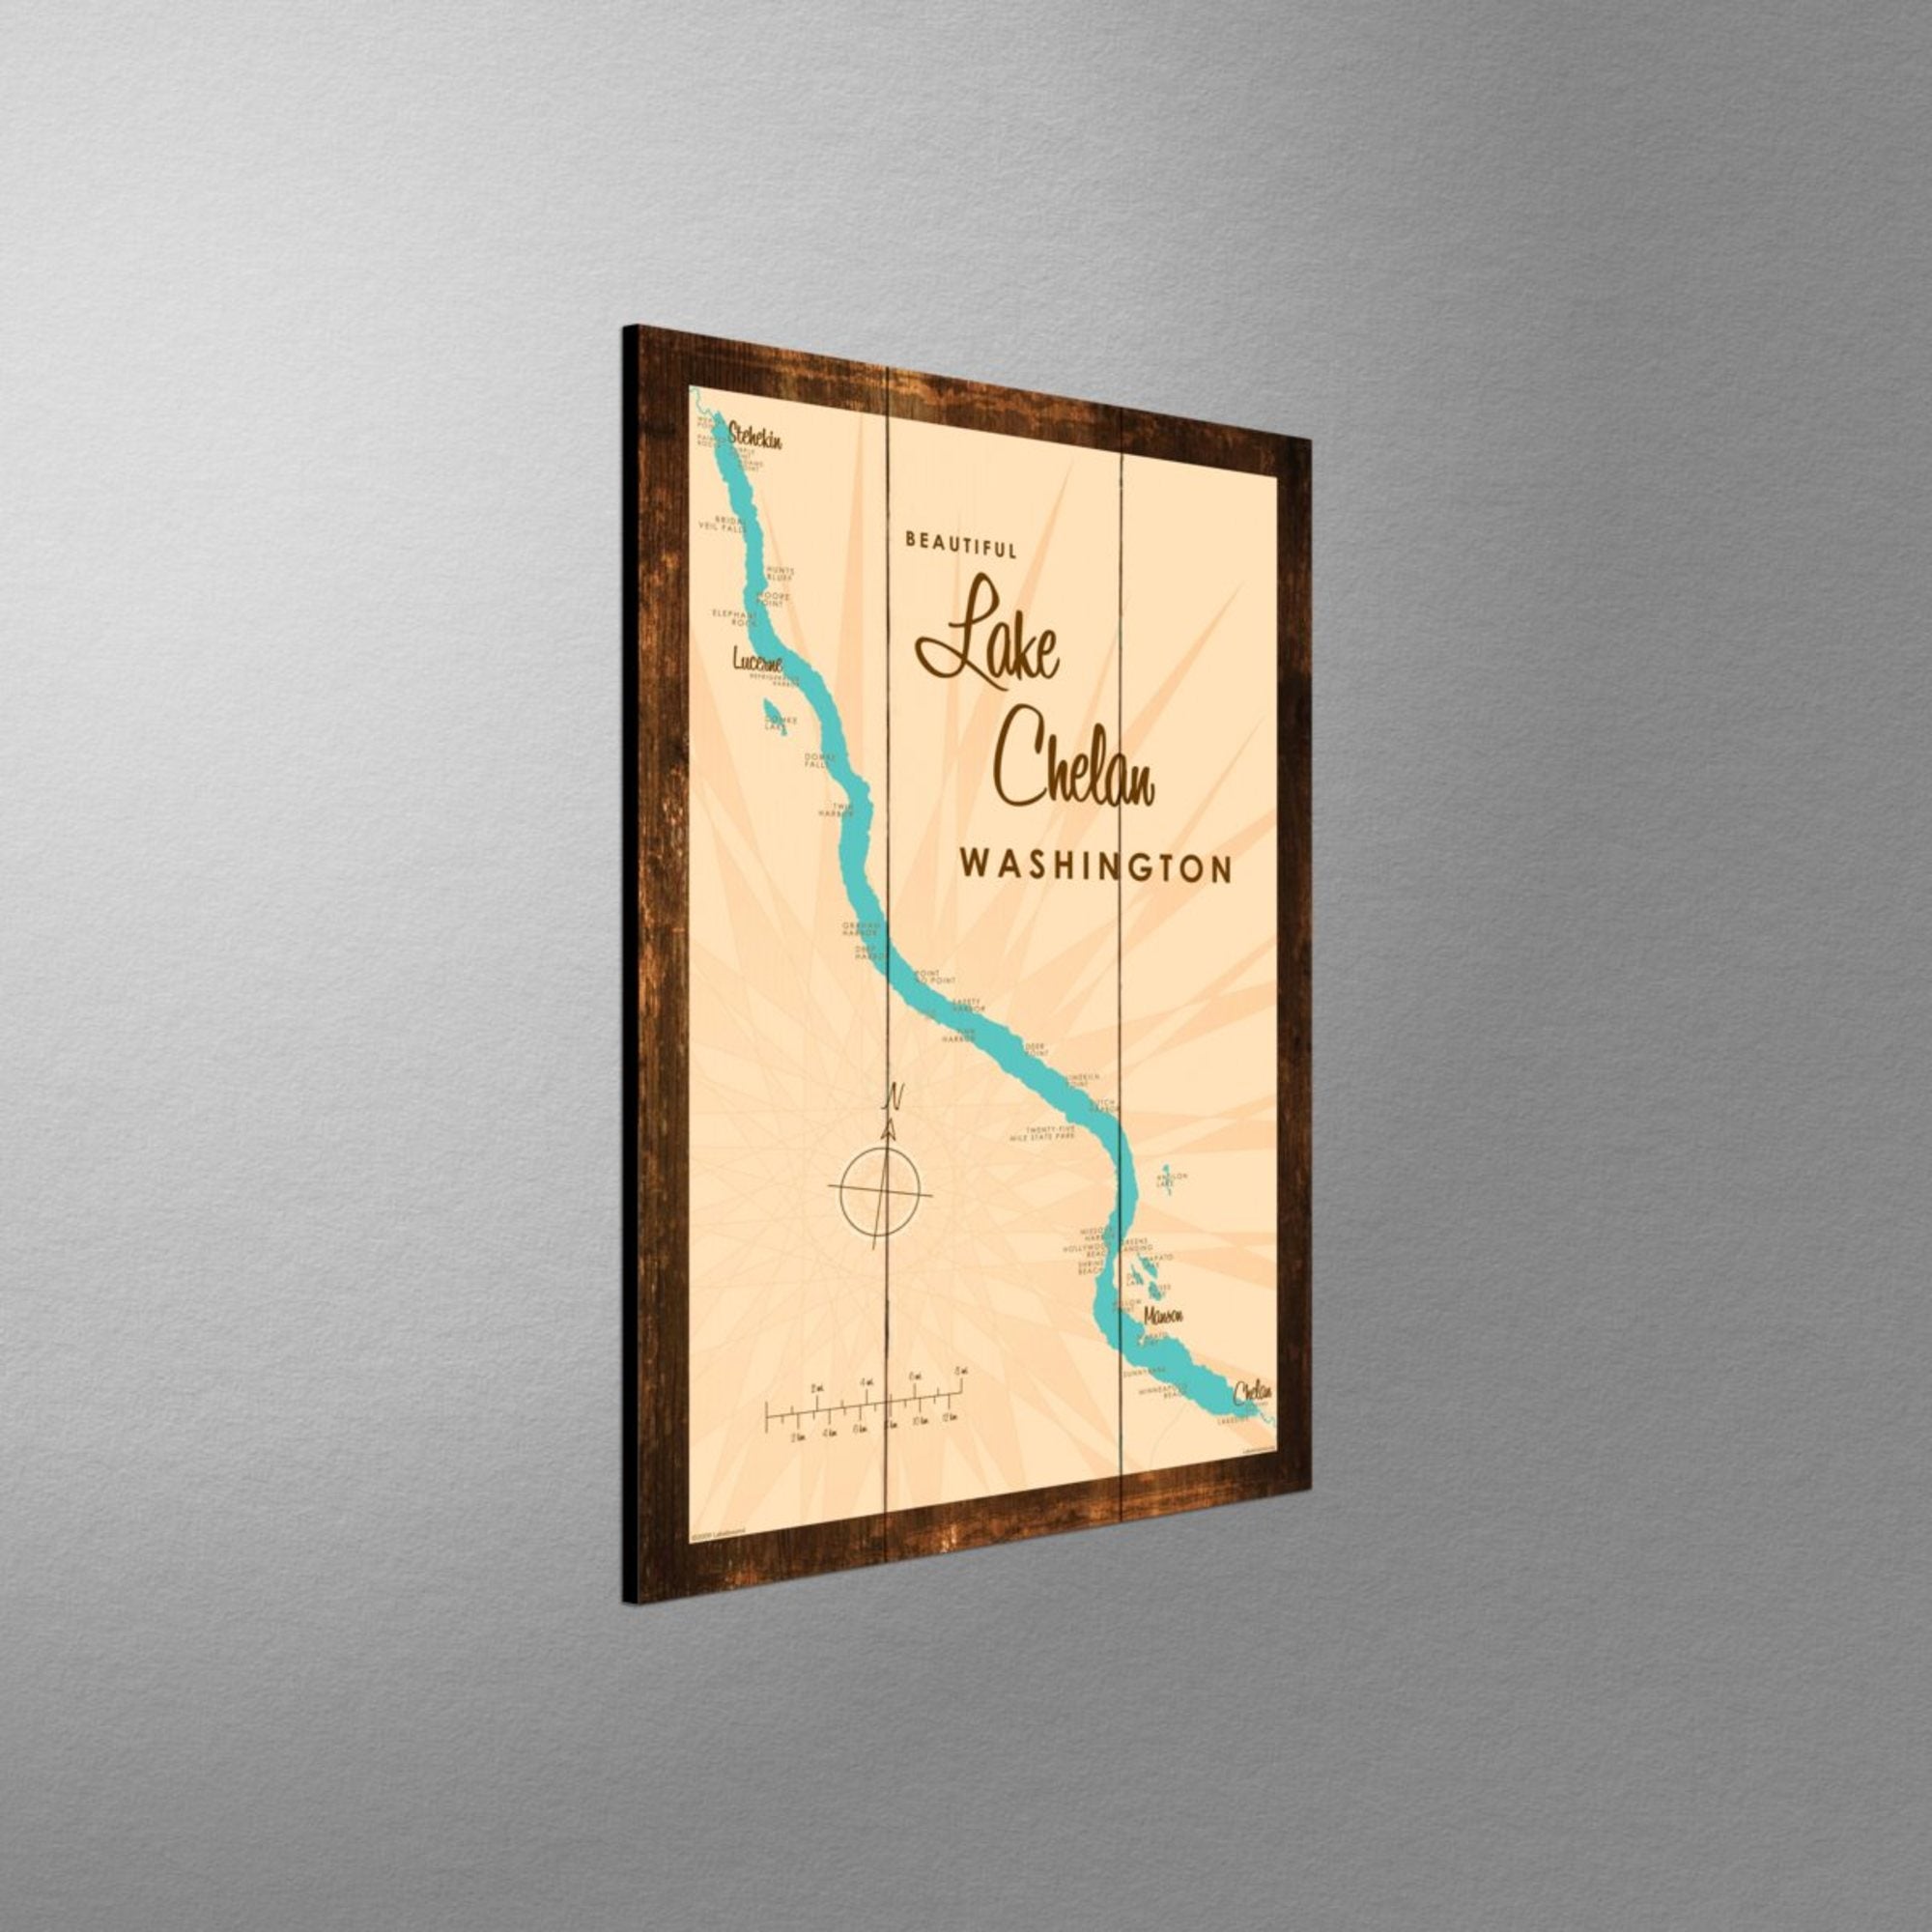 Lake Chelan Washington, Rustic Wood Sign Map Art